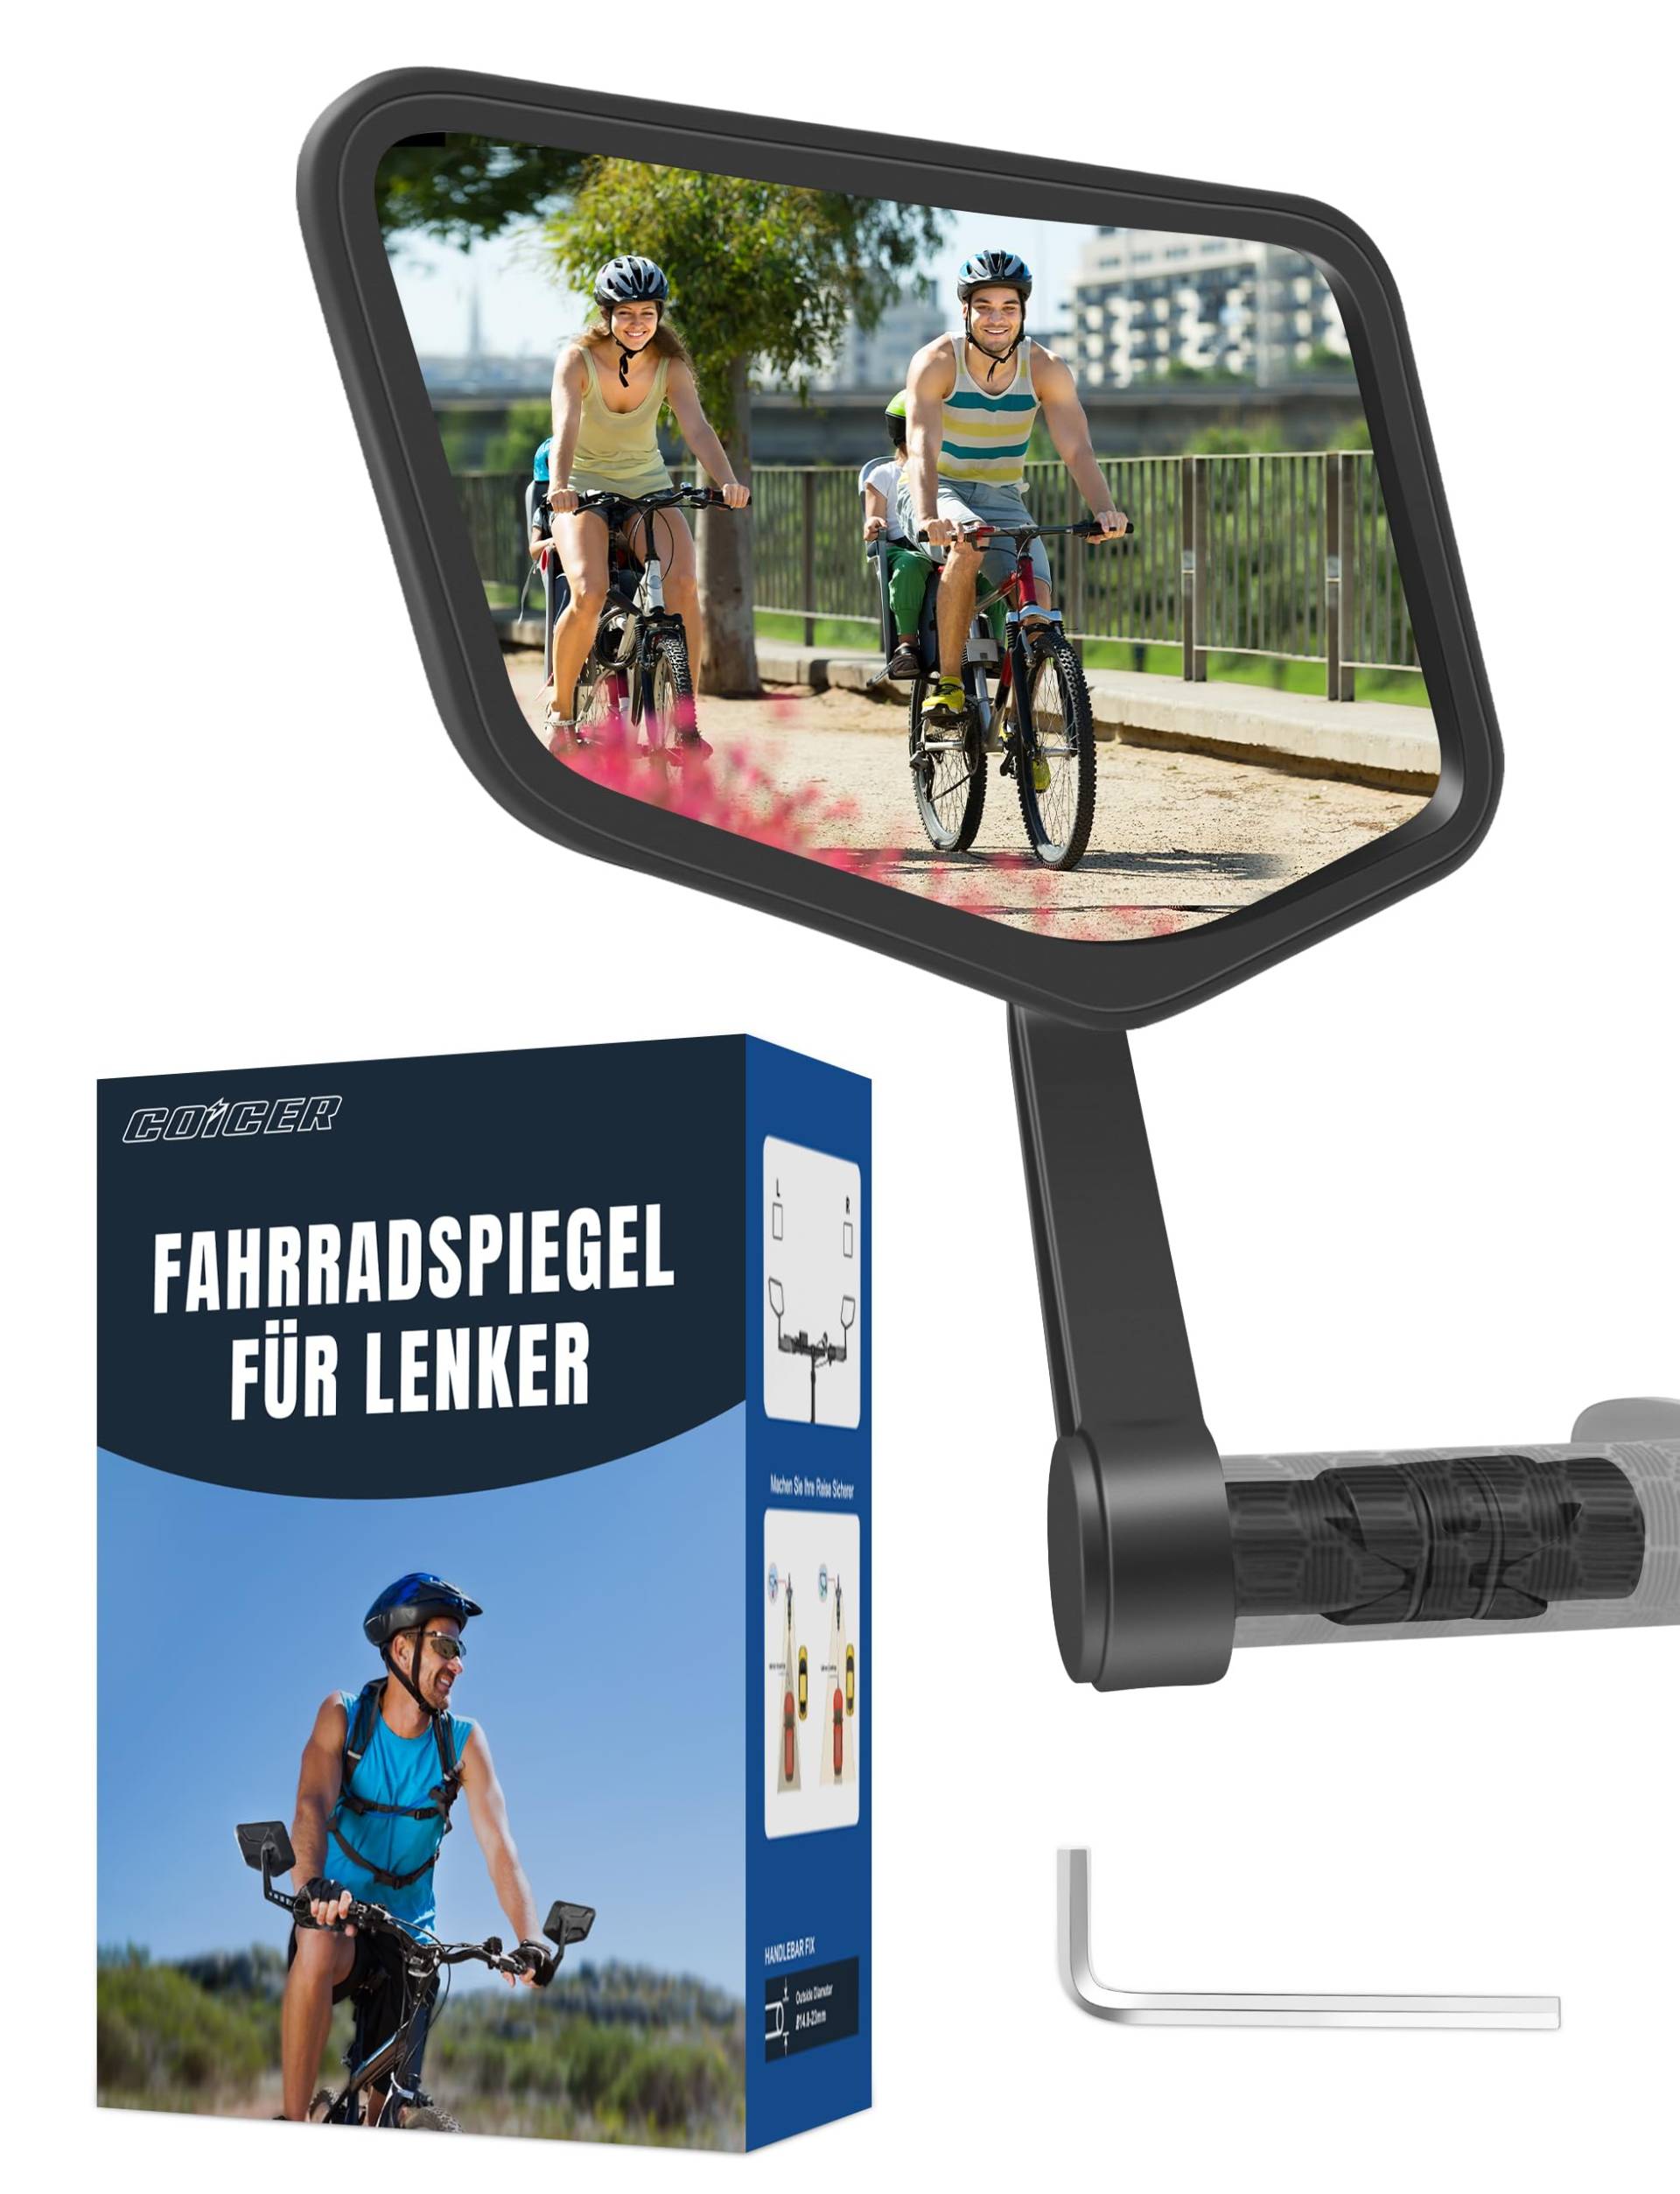 COICER Fahrradspiegel extra große Spiegelfläche |schlagfestes Echtglas| für Lenker ebike | Rückspiegel Fahrrad Spiegel für e-bike, klappbar (links) von COICER